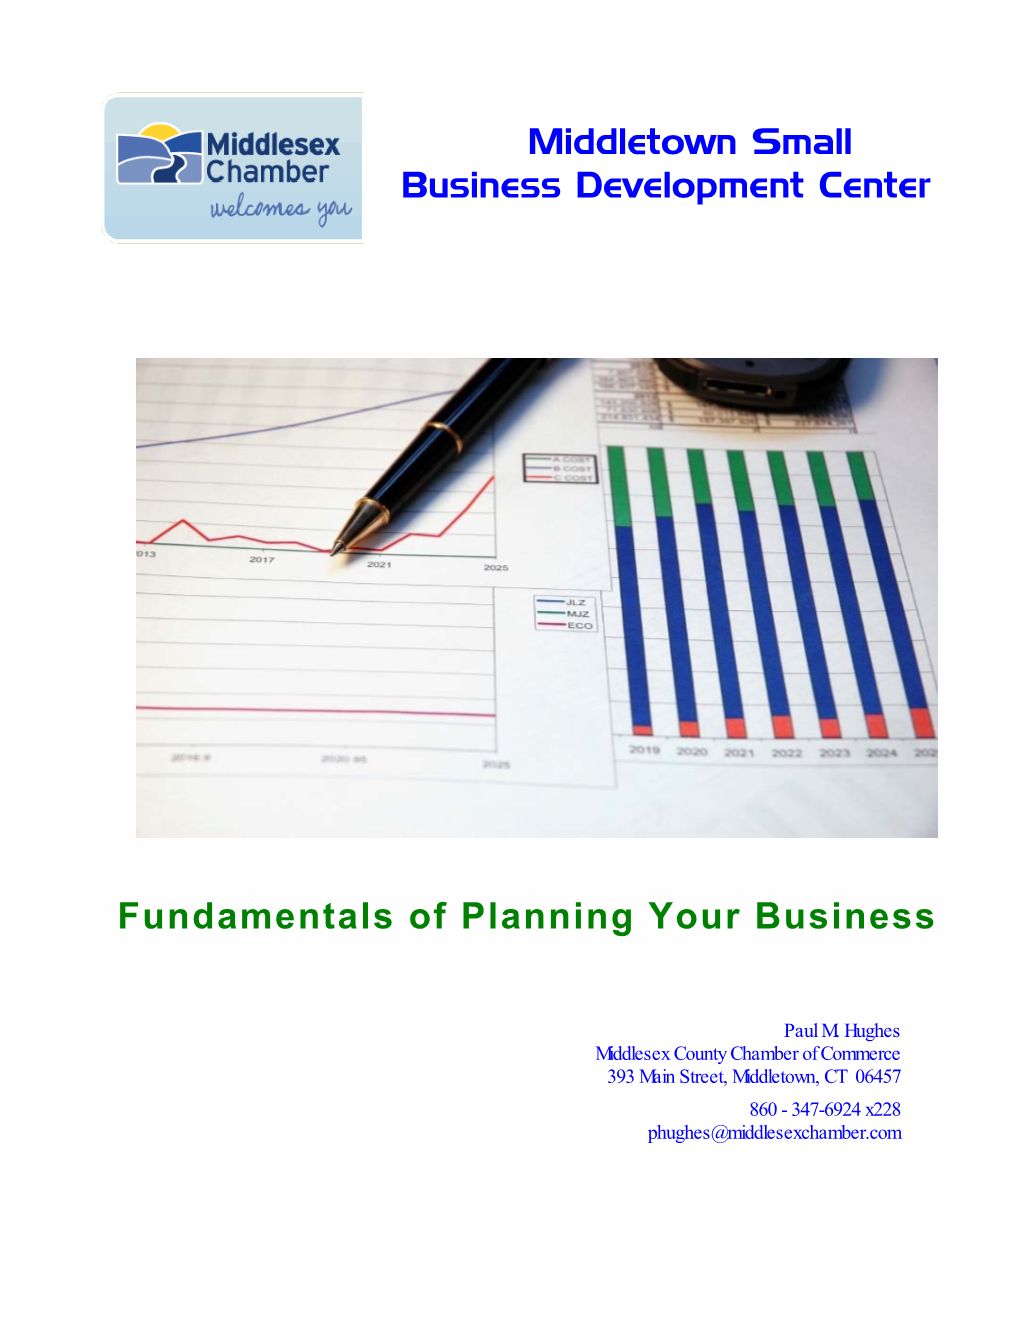 Middletown Small Business Development Center Fundamentals